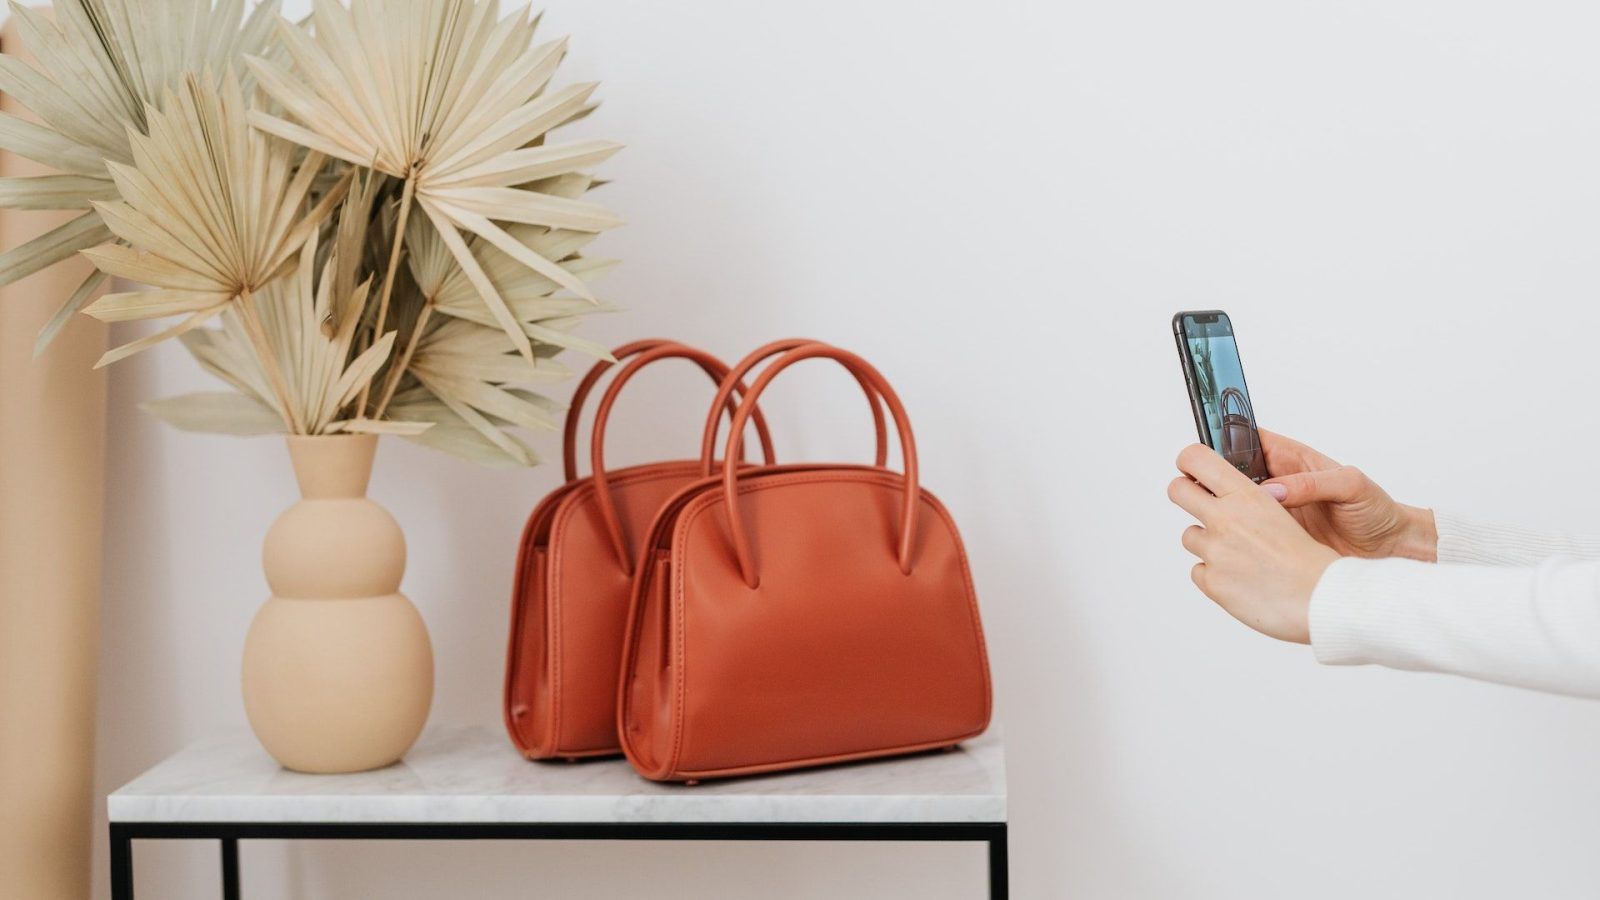 Best handbags online: Top websites to find your next purse